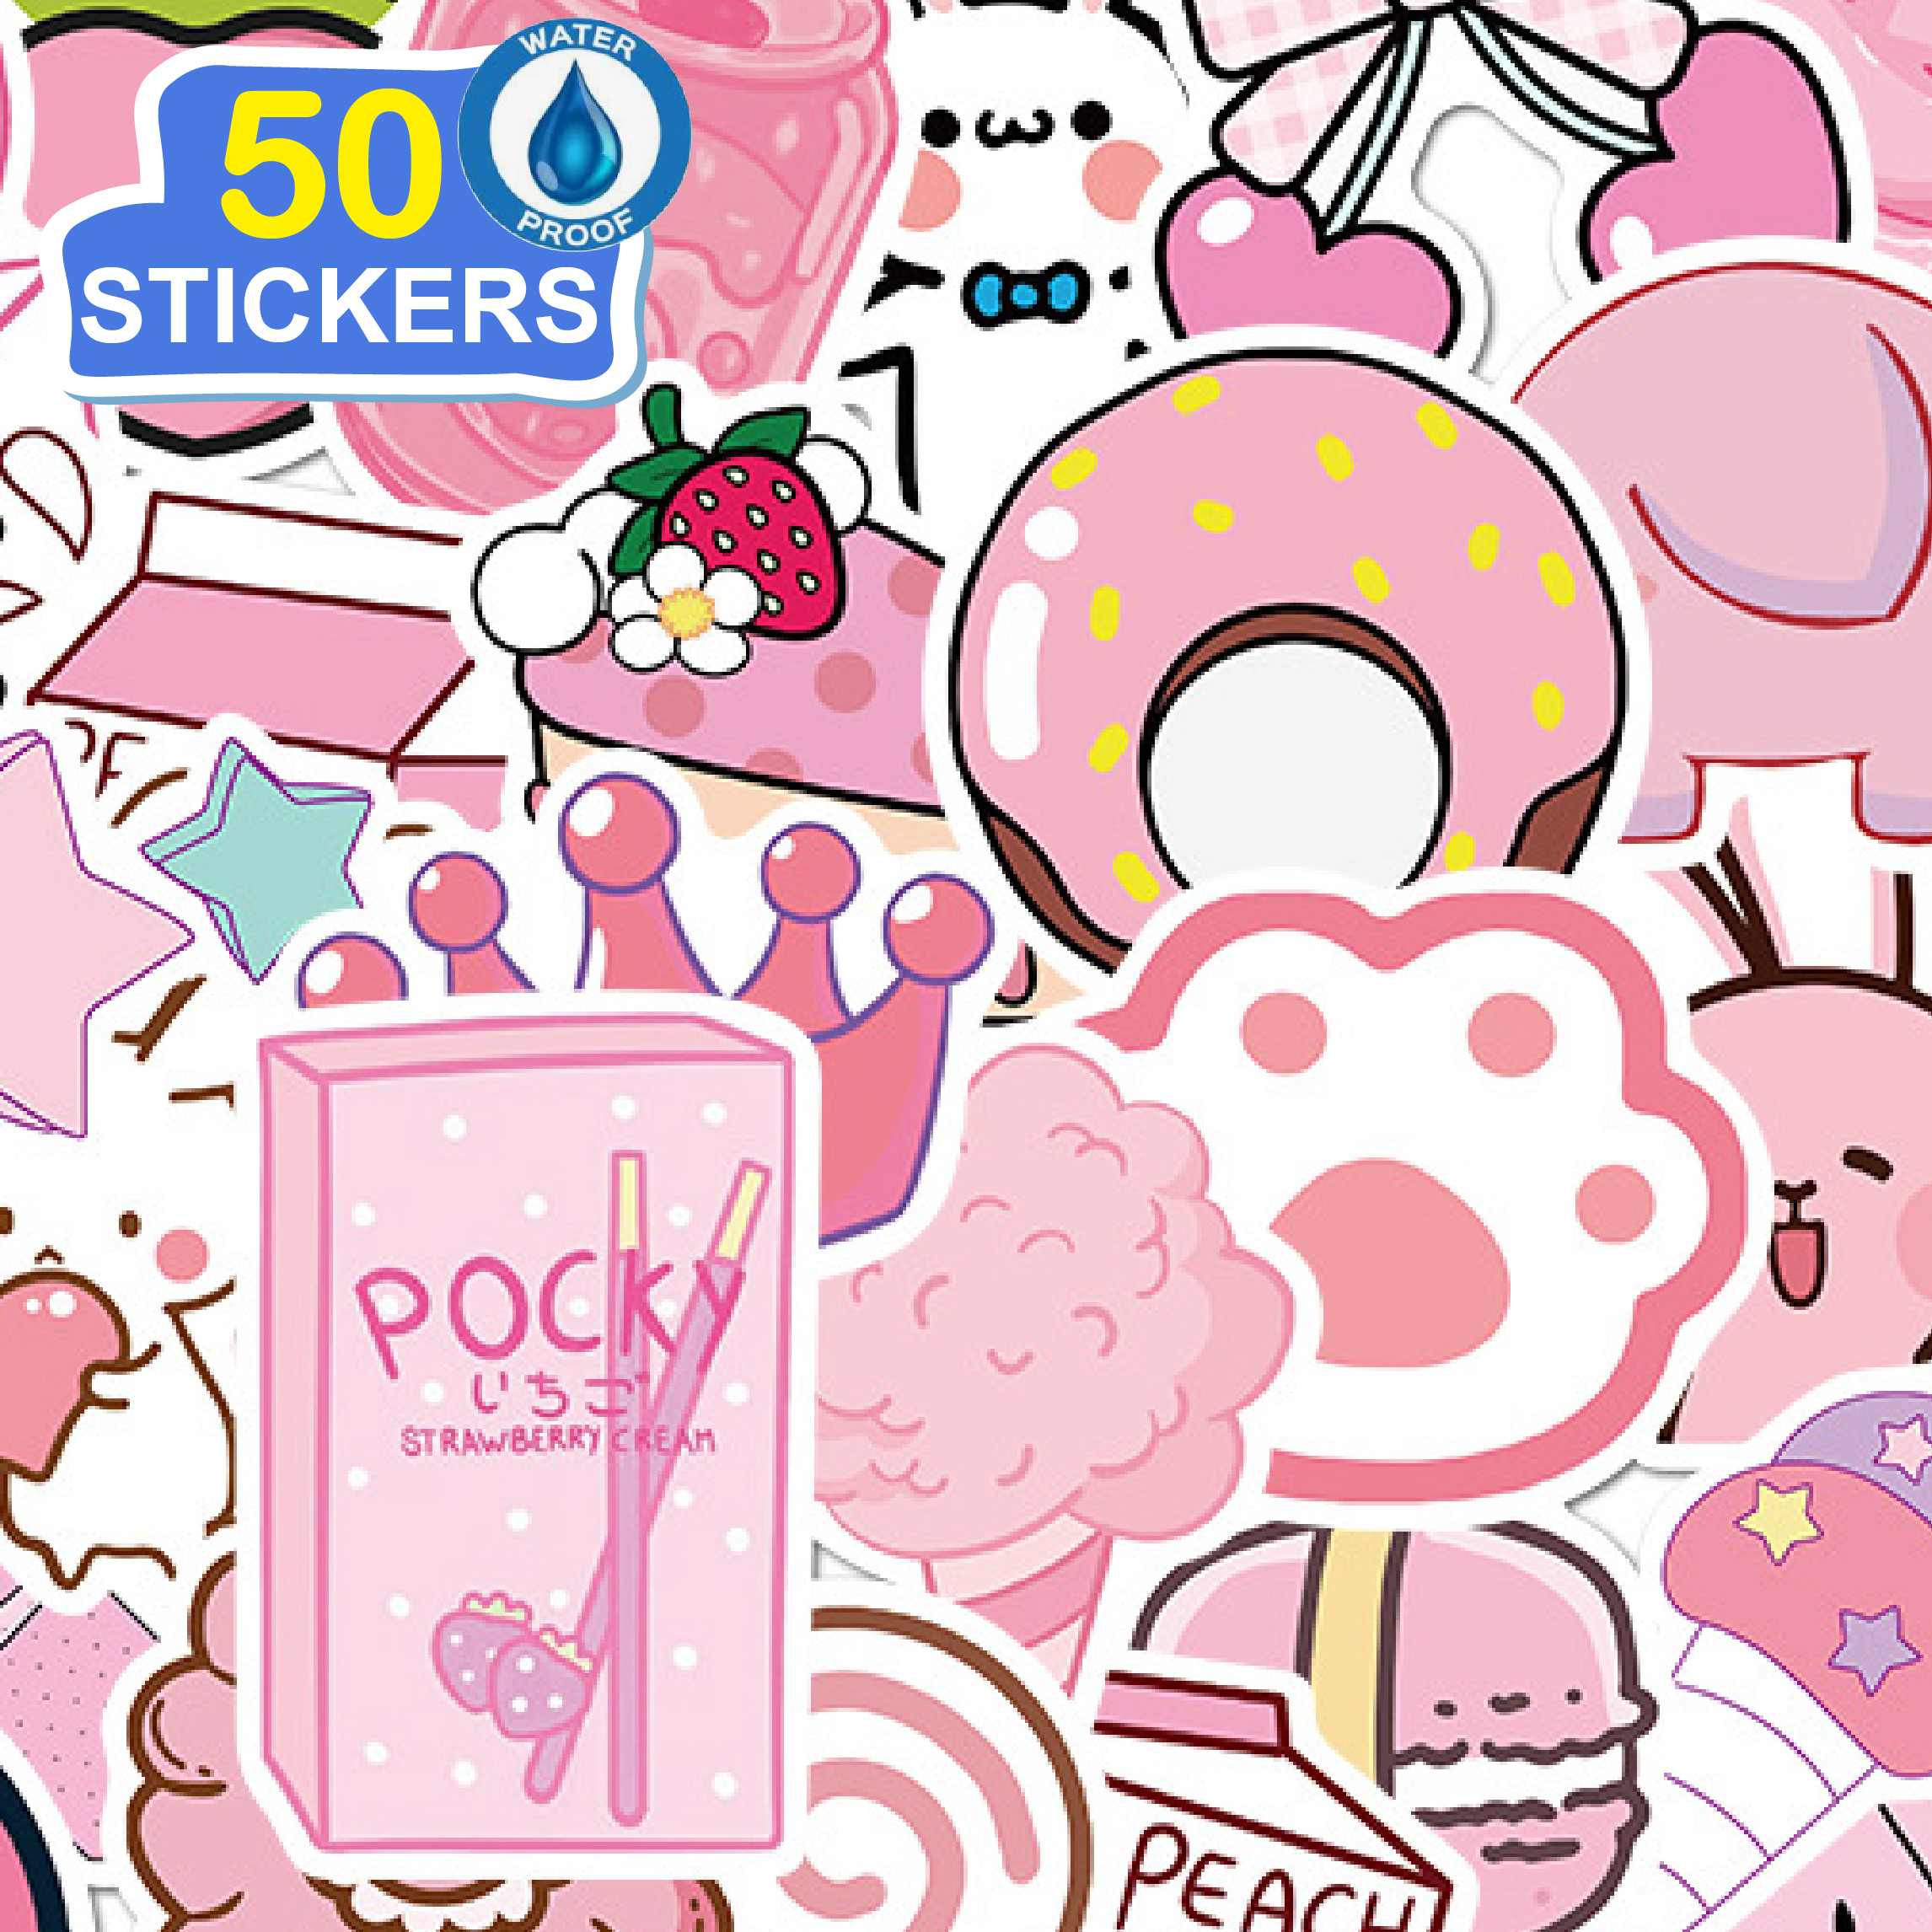 50 Stickers Cô gái màu hồng -Giấy Hình dán dễ thương hoạt hình trang trí laptop, điện thoại, ipad, cốc nước, sổ tay, vali du lịch, scooter, ván trược - Chống thấm nước